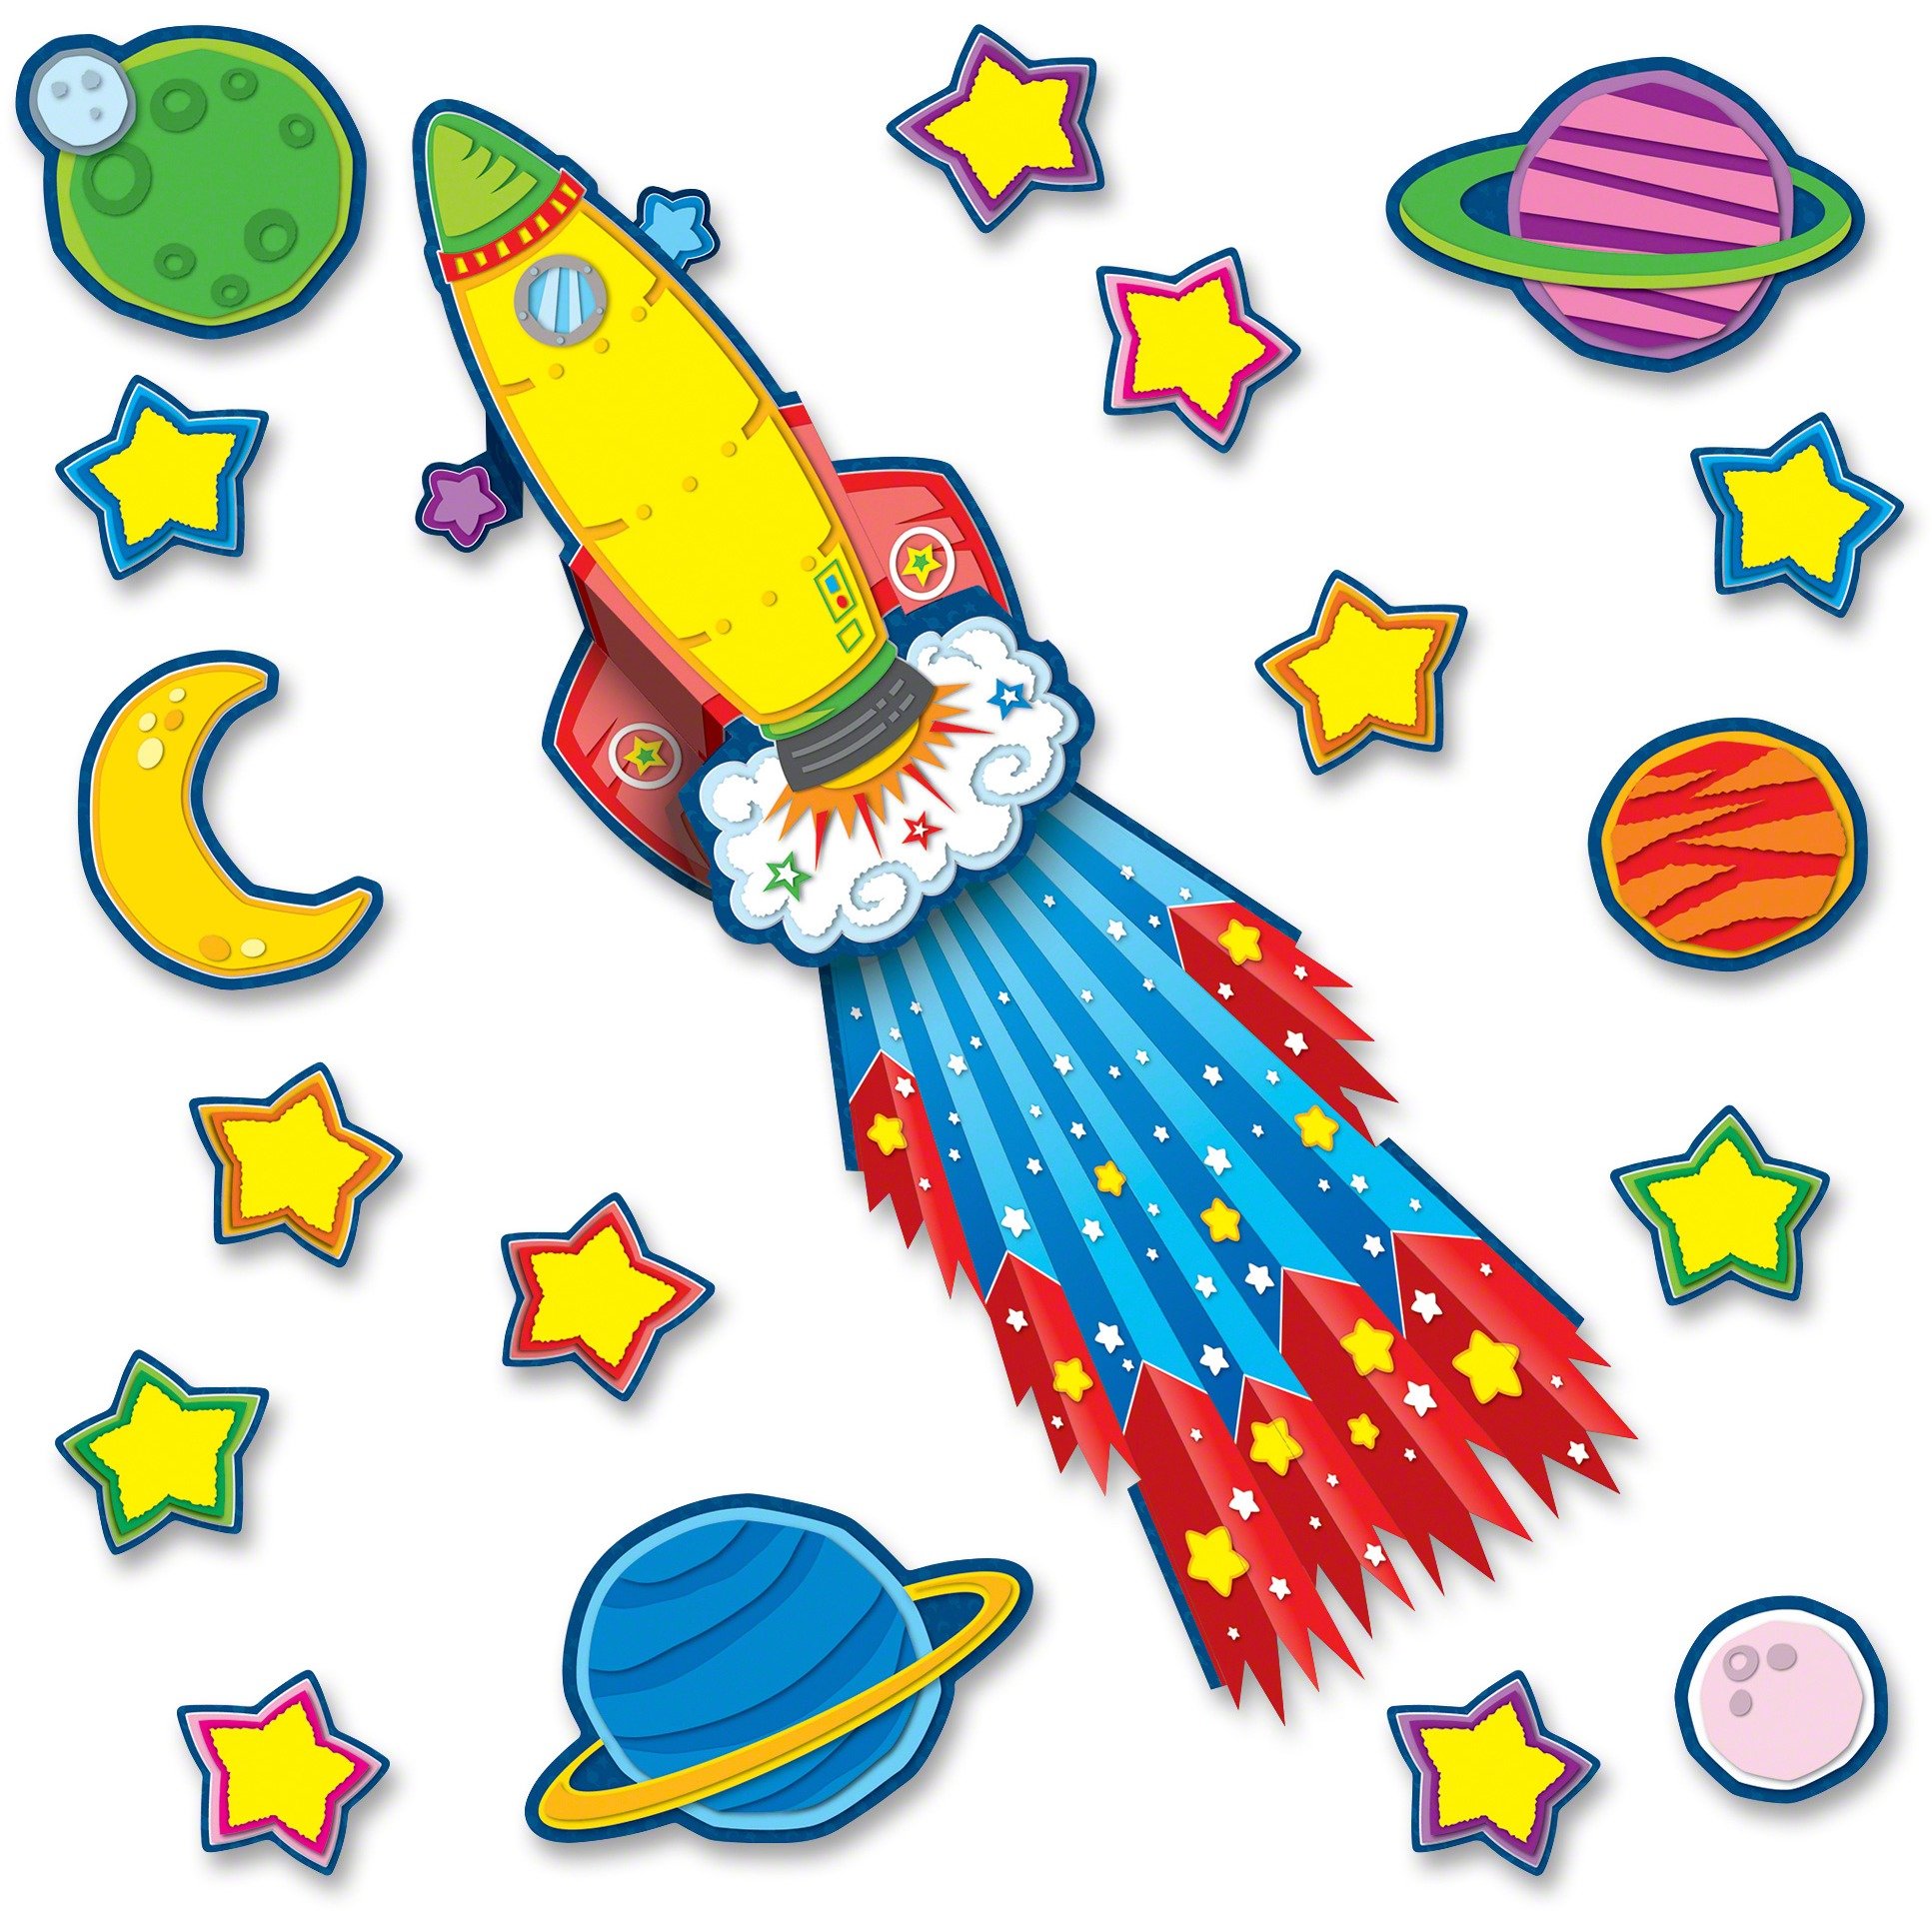 Космическая звезда картинка для детей